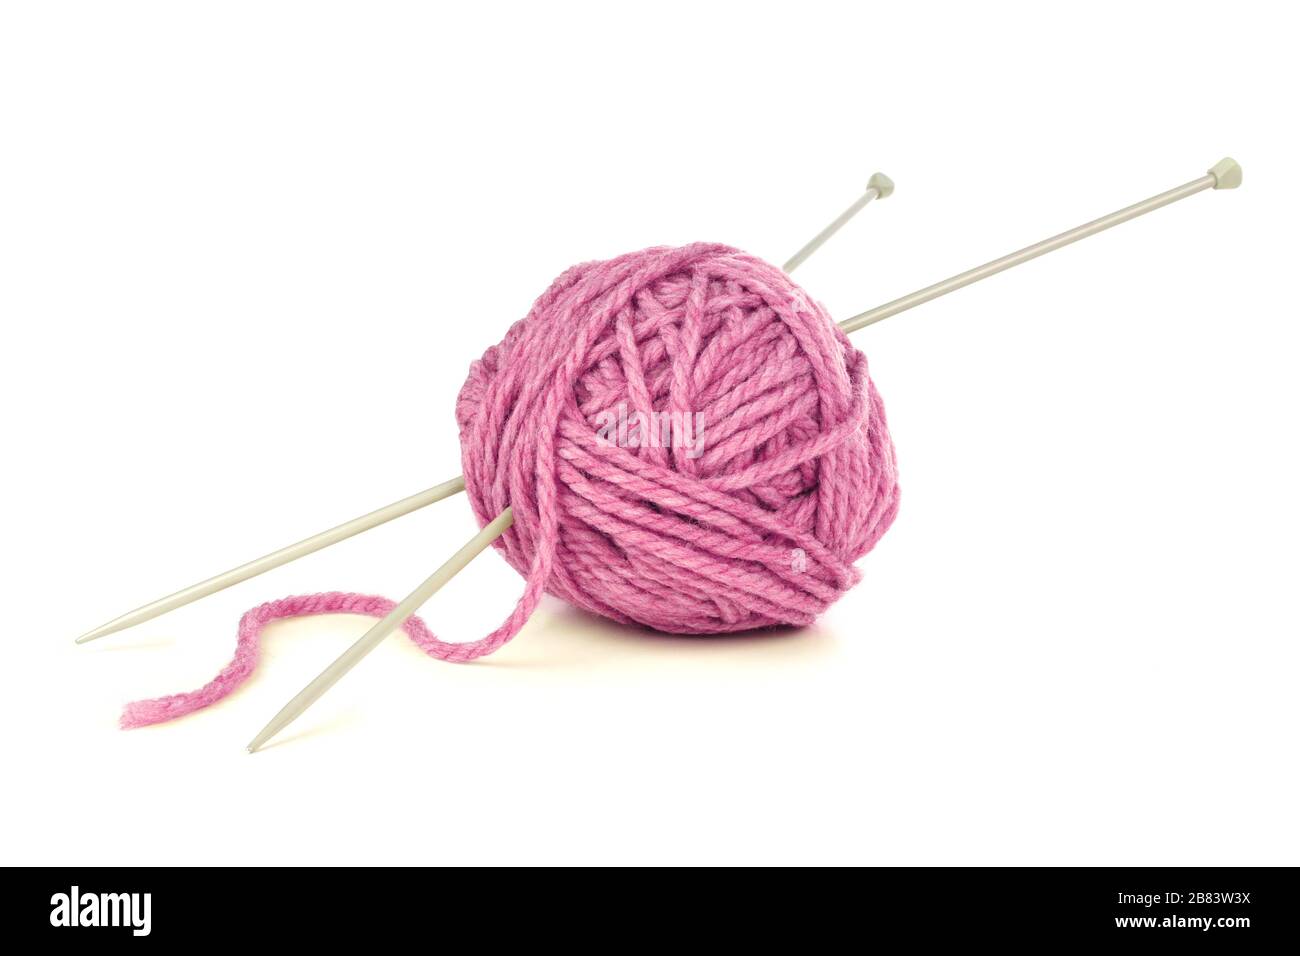 Yellow Ball Of Wool With Knitting Needles Stock Photo - Download Image Now  - Knitting, Ball Of Wool, Knitting Needle - iStock